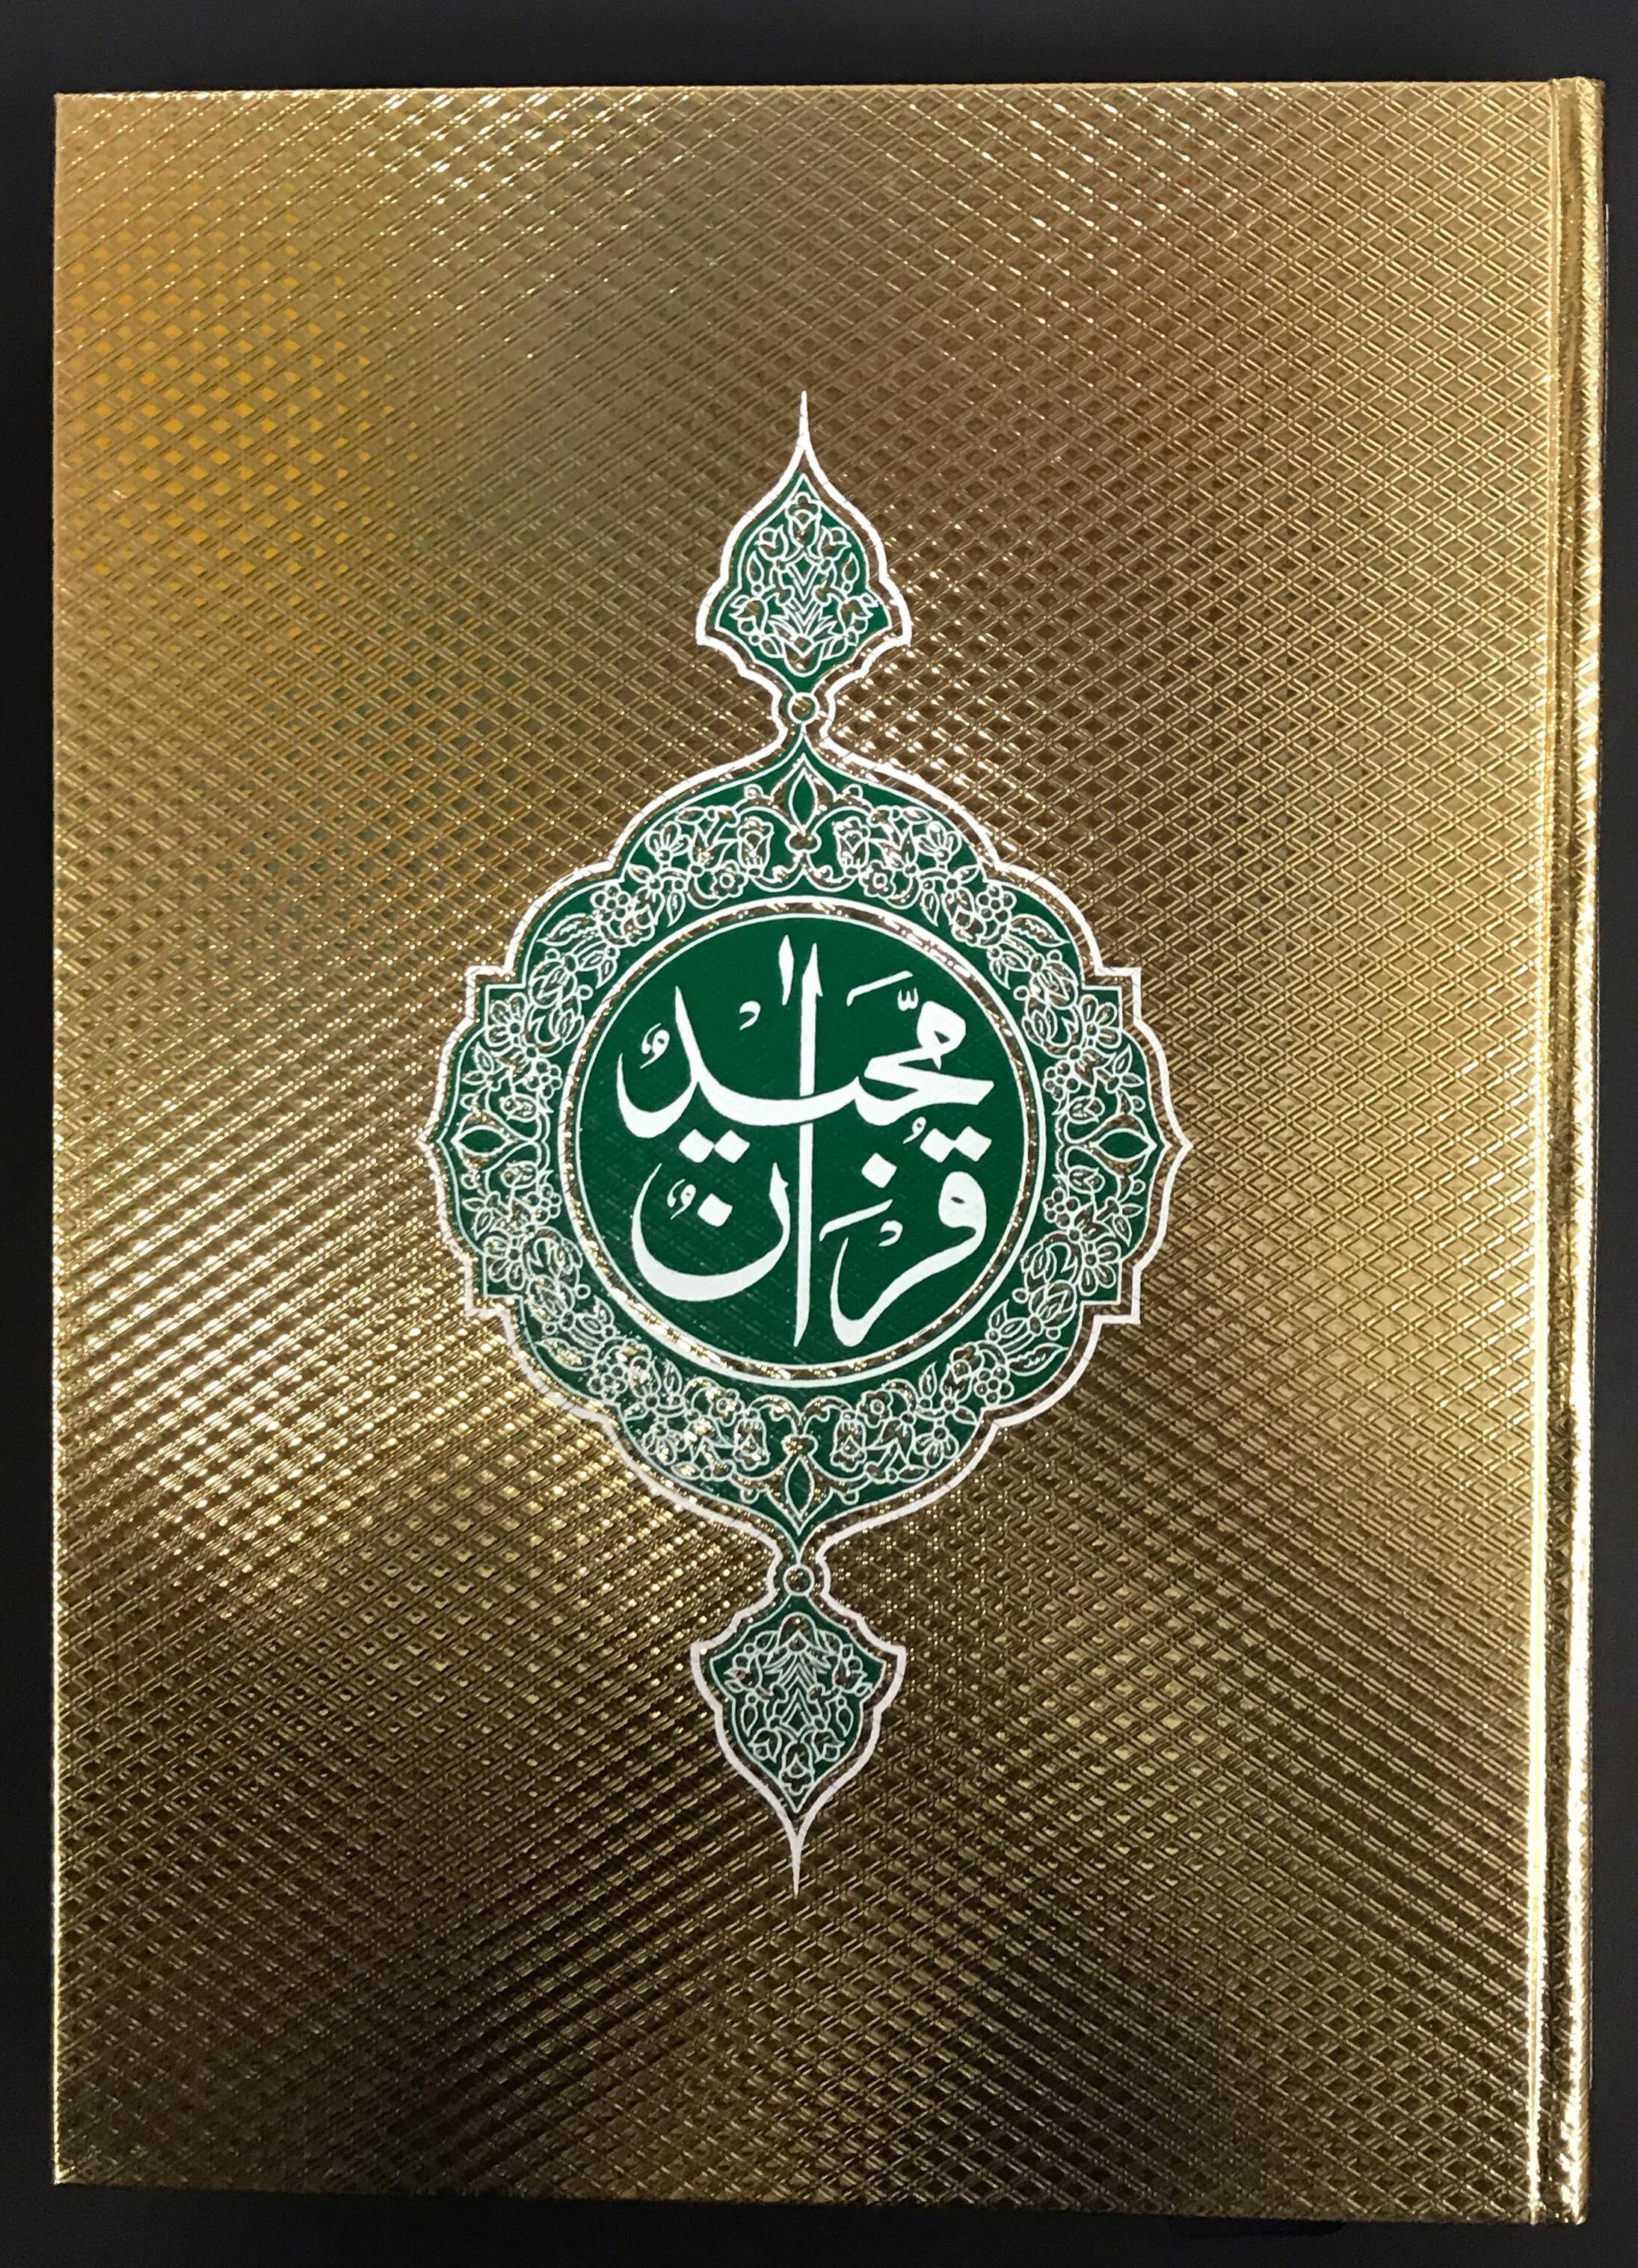 หนังสือ คำภีร์อัลกุรอาน มายิด สีทองสวยงาม  เล่มใหญ่ 30ยุส(Al Quran ) อ่านง่าย